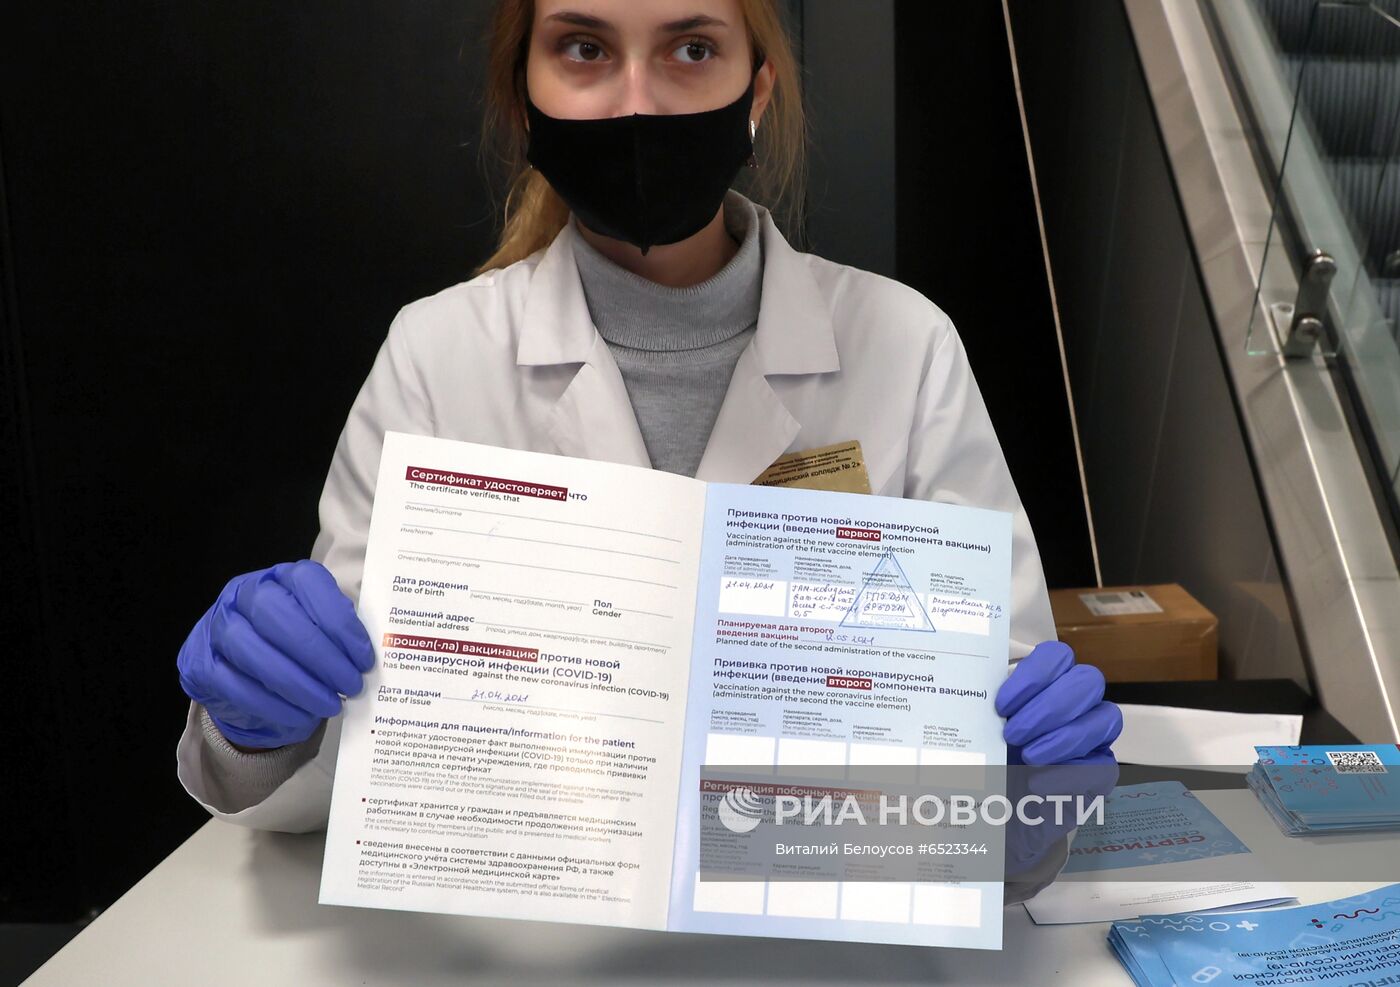 Старт работы новых выездных бригад вакцинации от COVID-19 в Москве